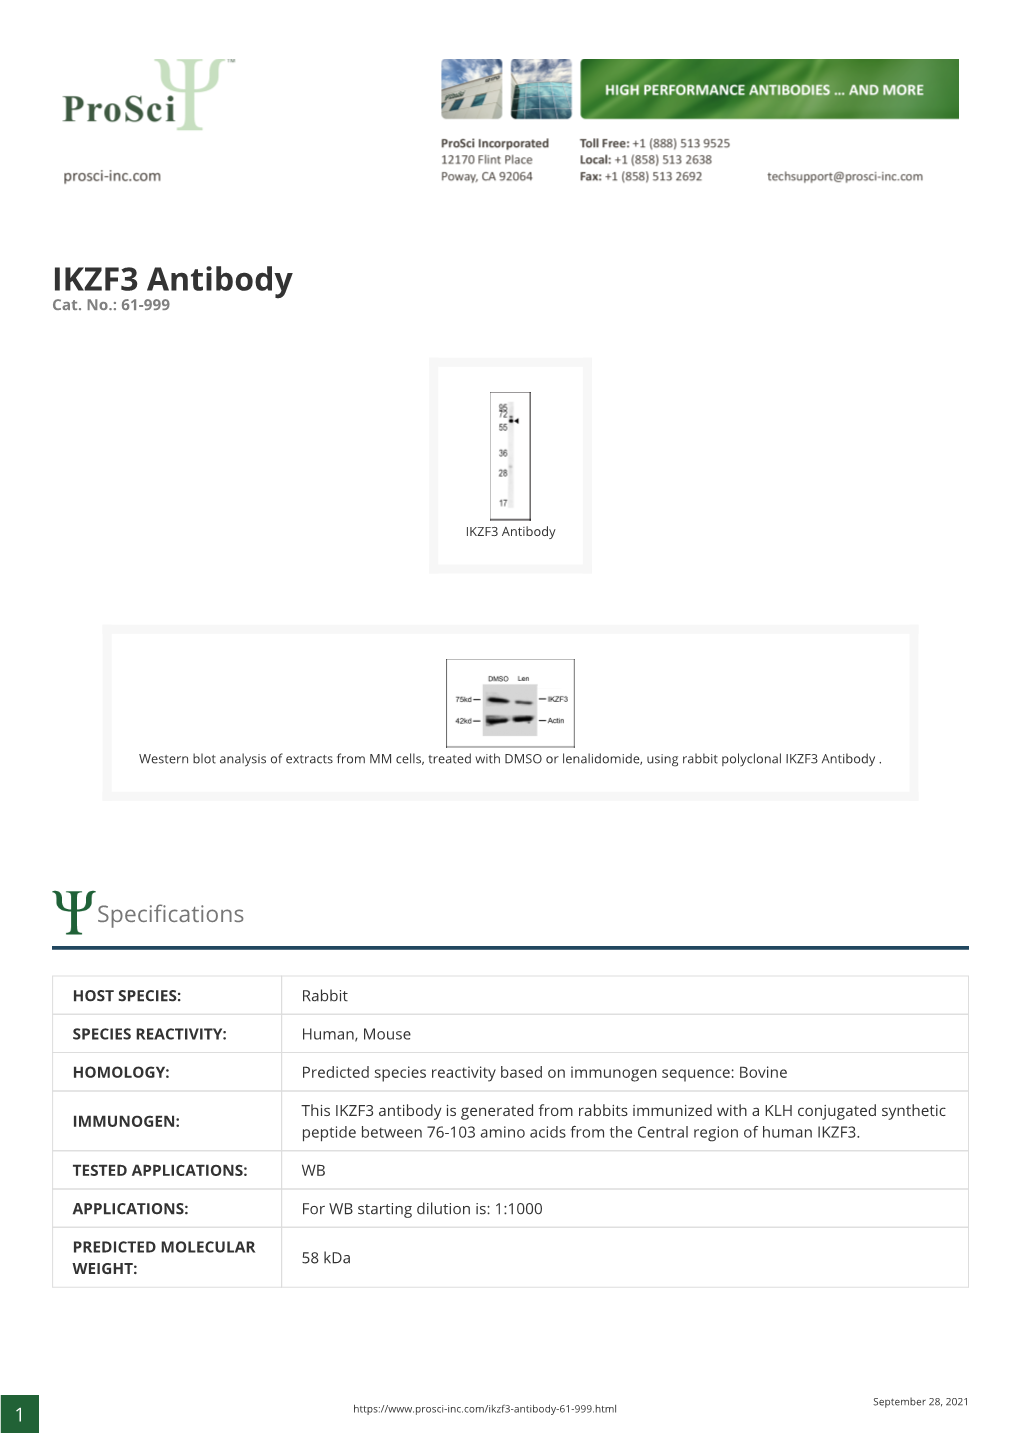 IKZF3 Antibody Cat